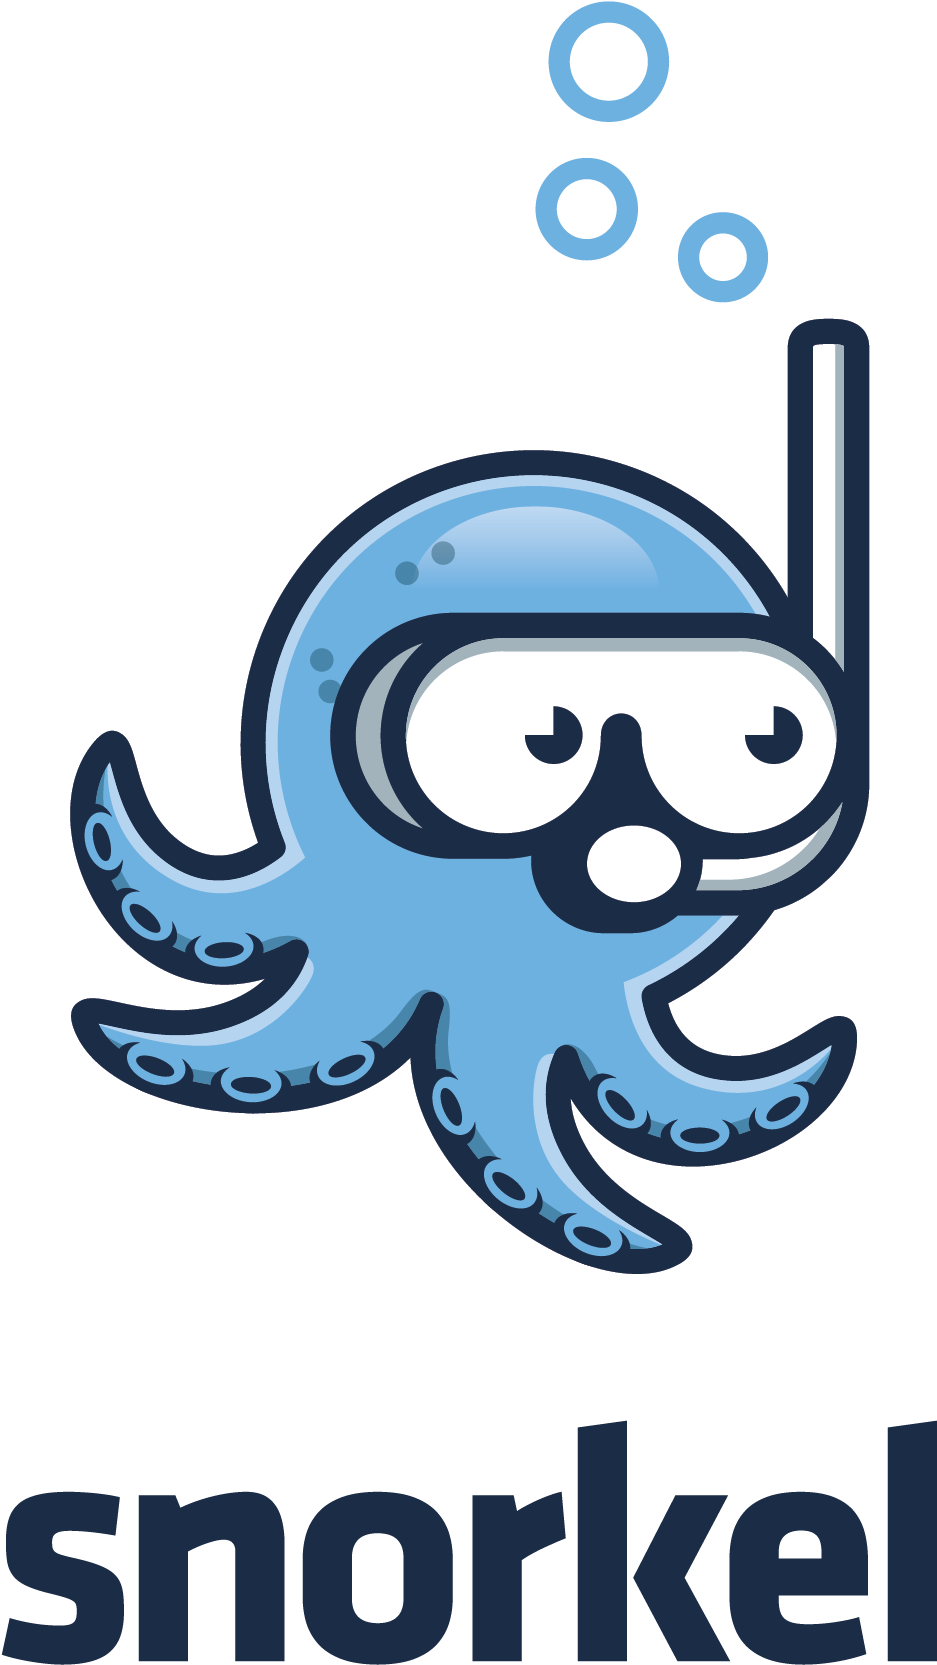 A Cartoon Of A Octopus